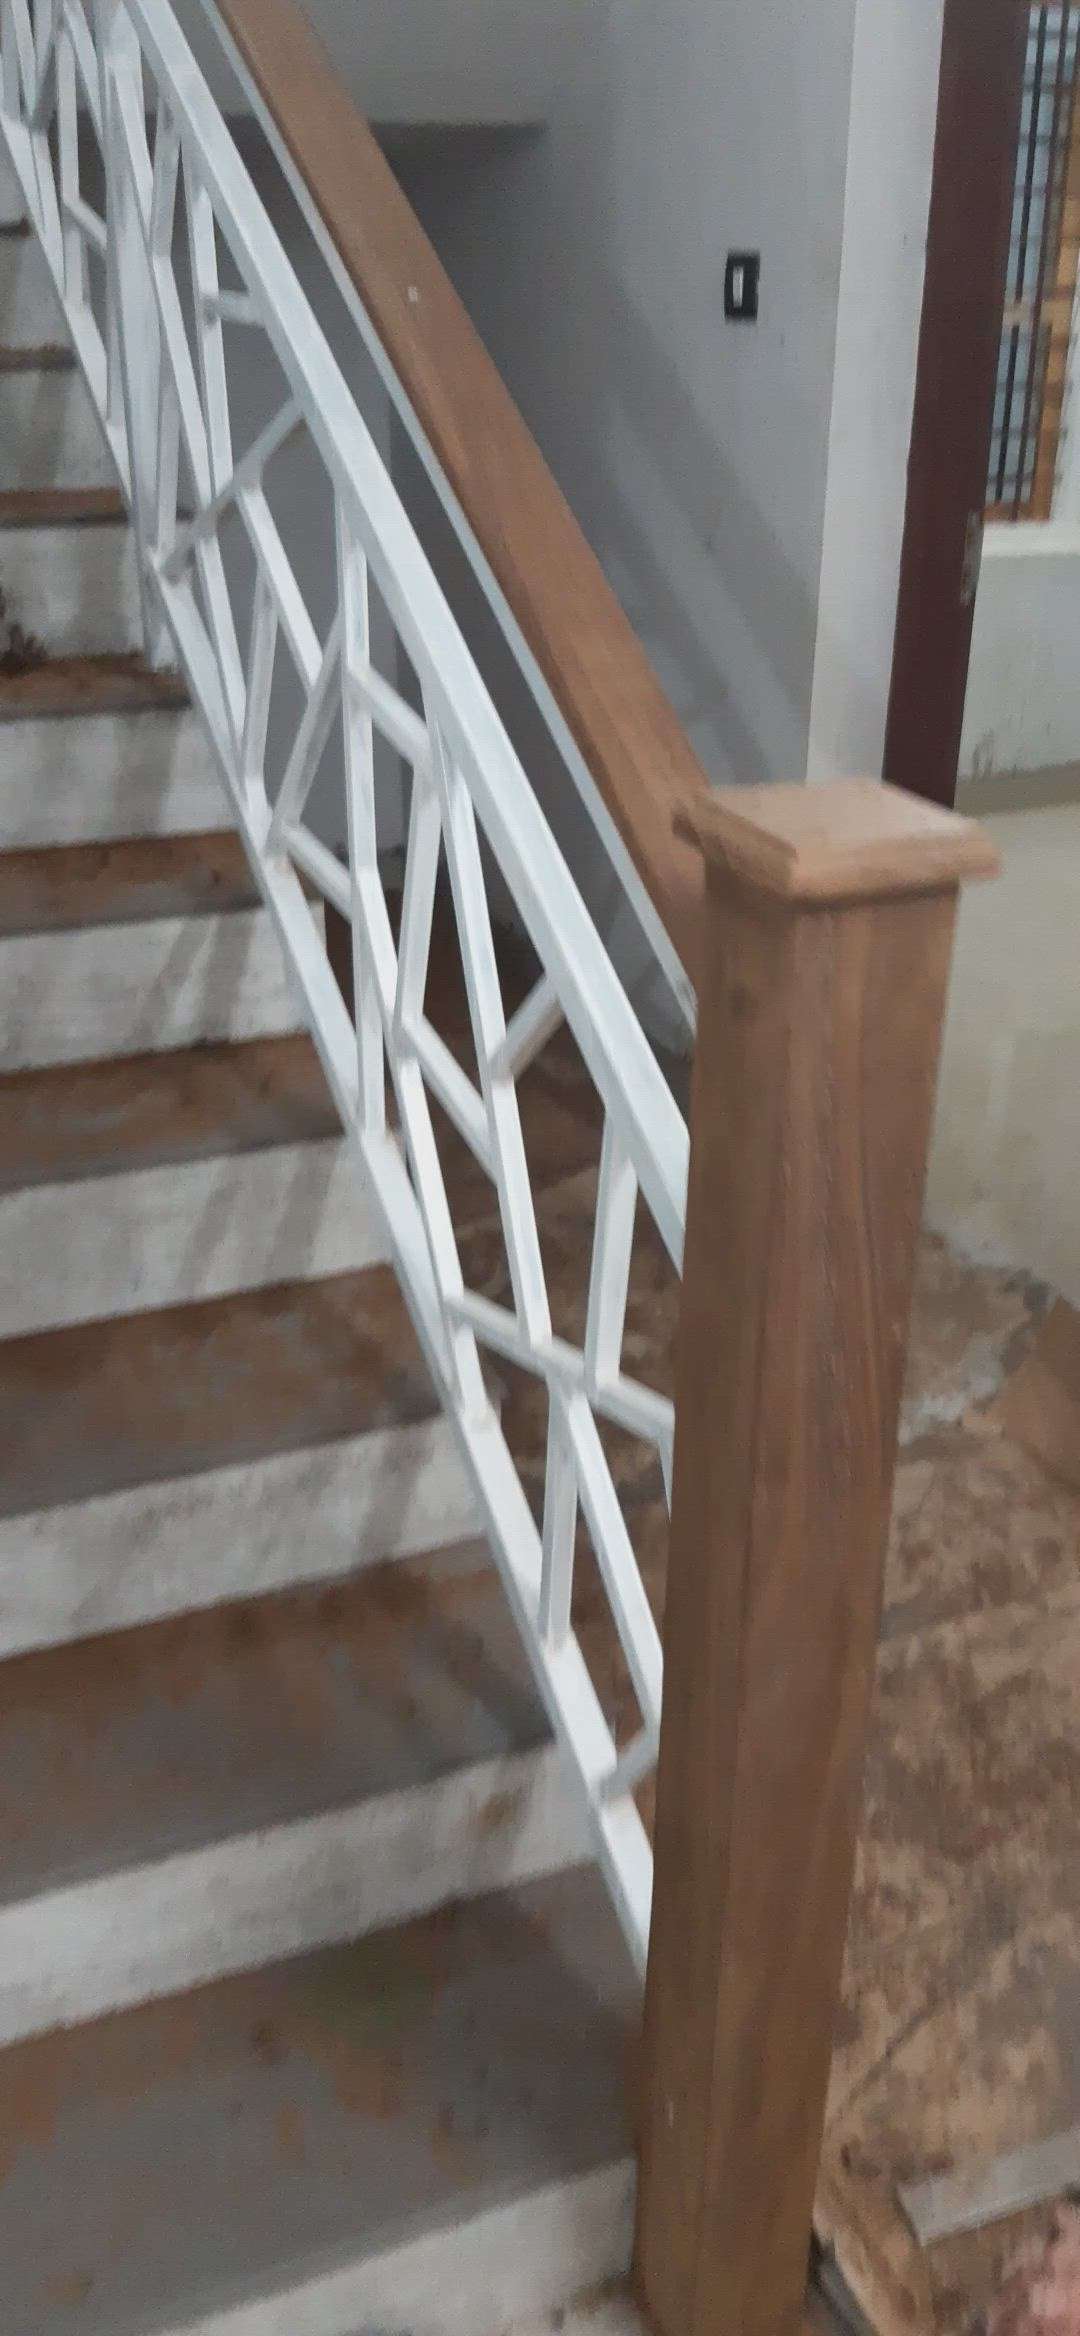 Staircase Designs by Service Provider Deepu Neelakandan, Ernakulam | Kolo